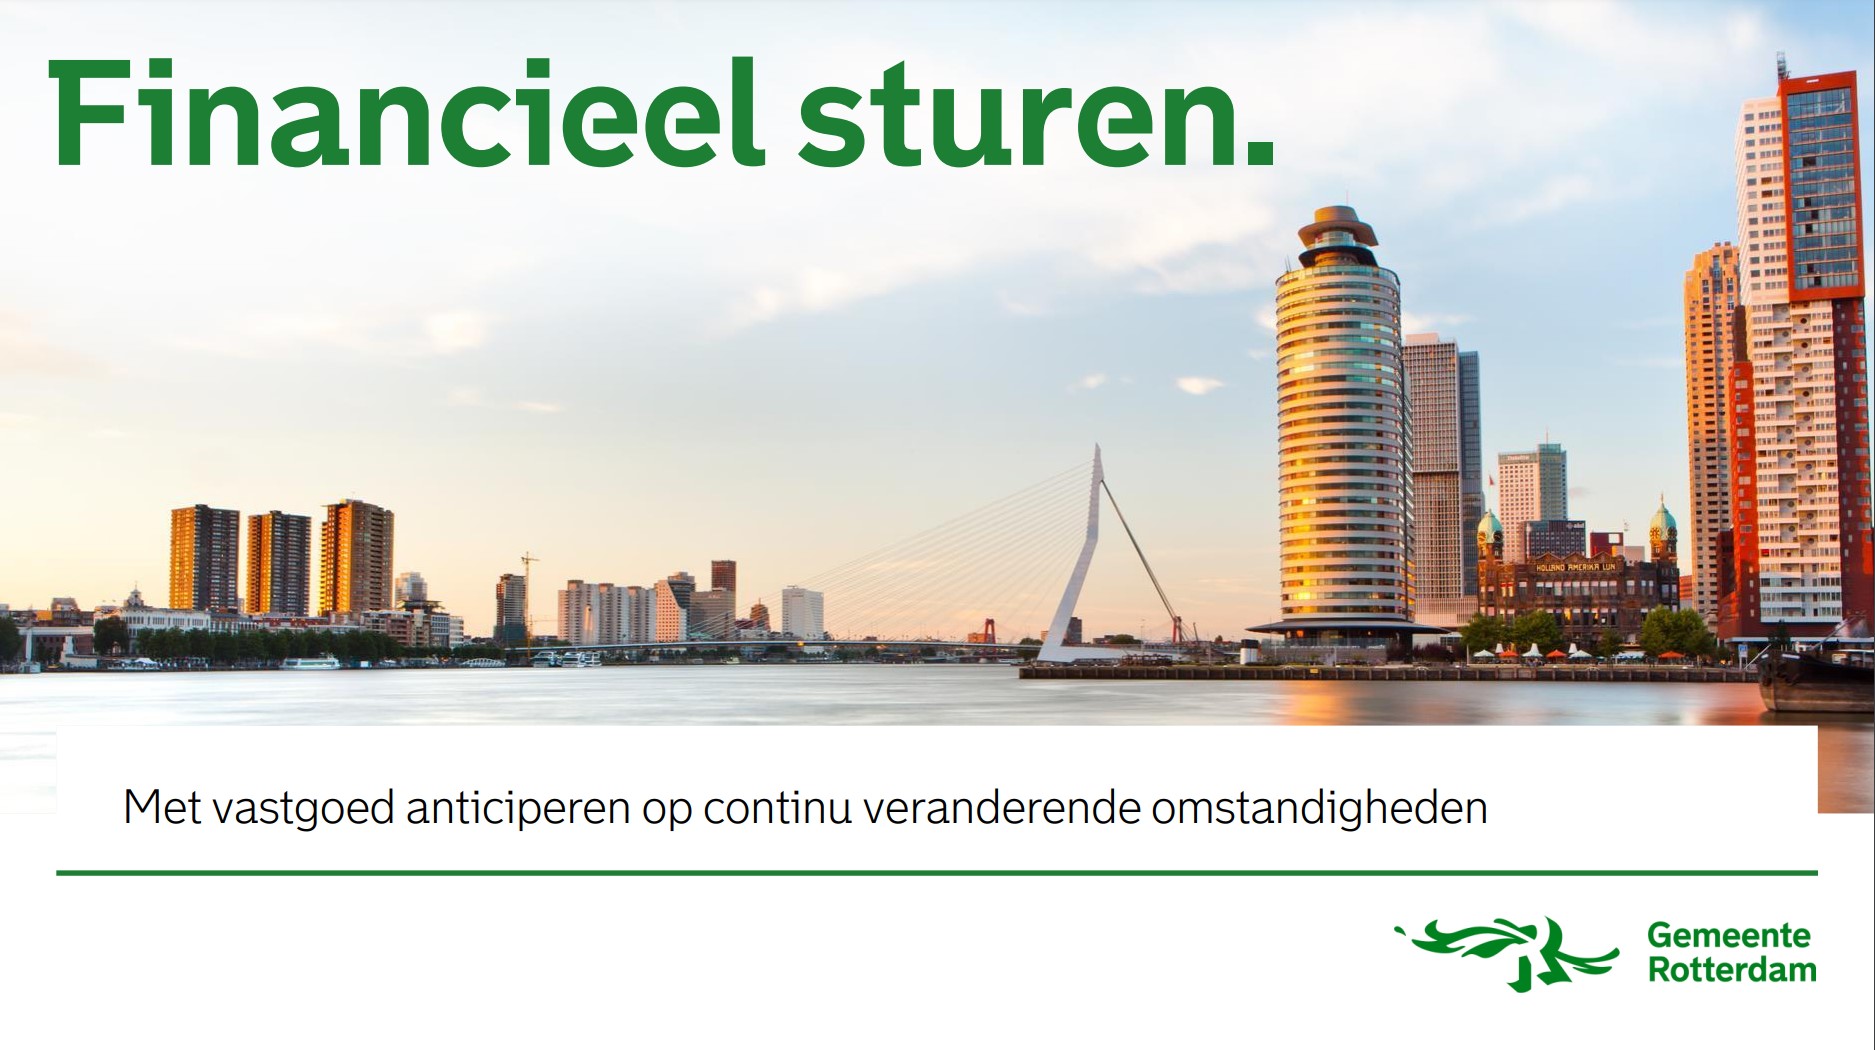 Rotterdam - Financieel sturen